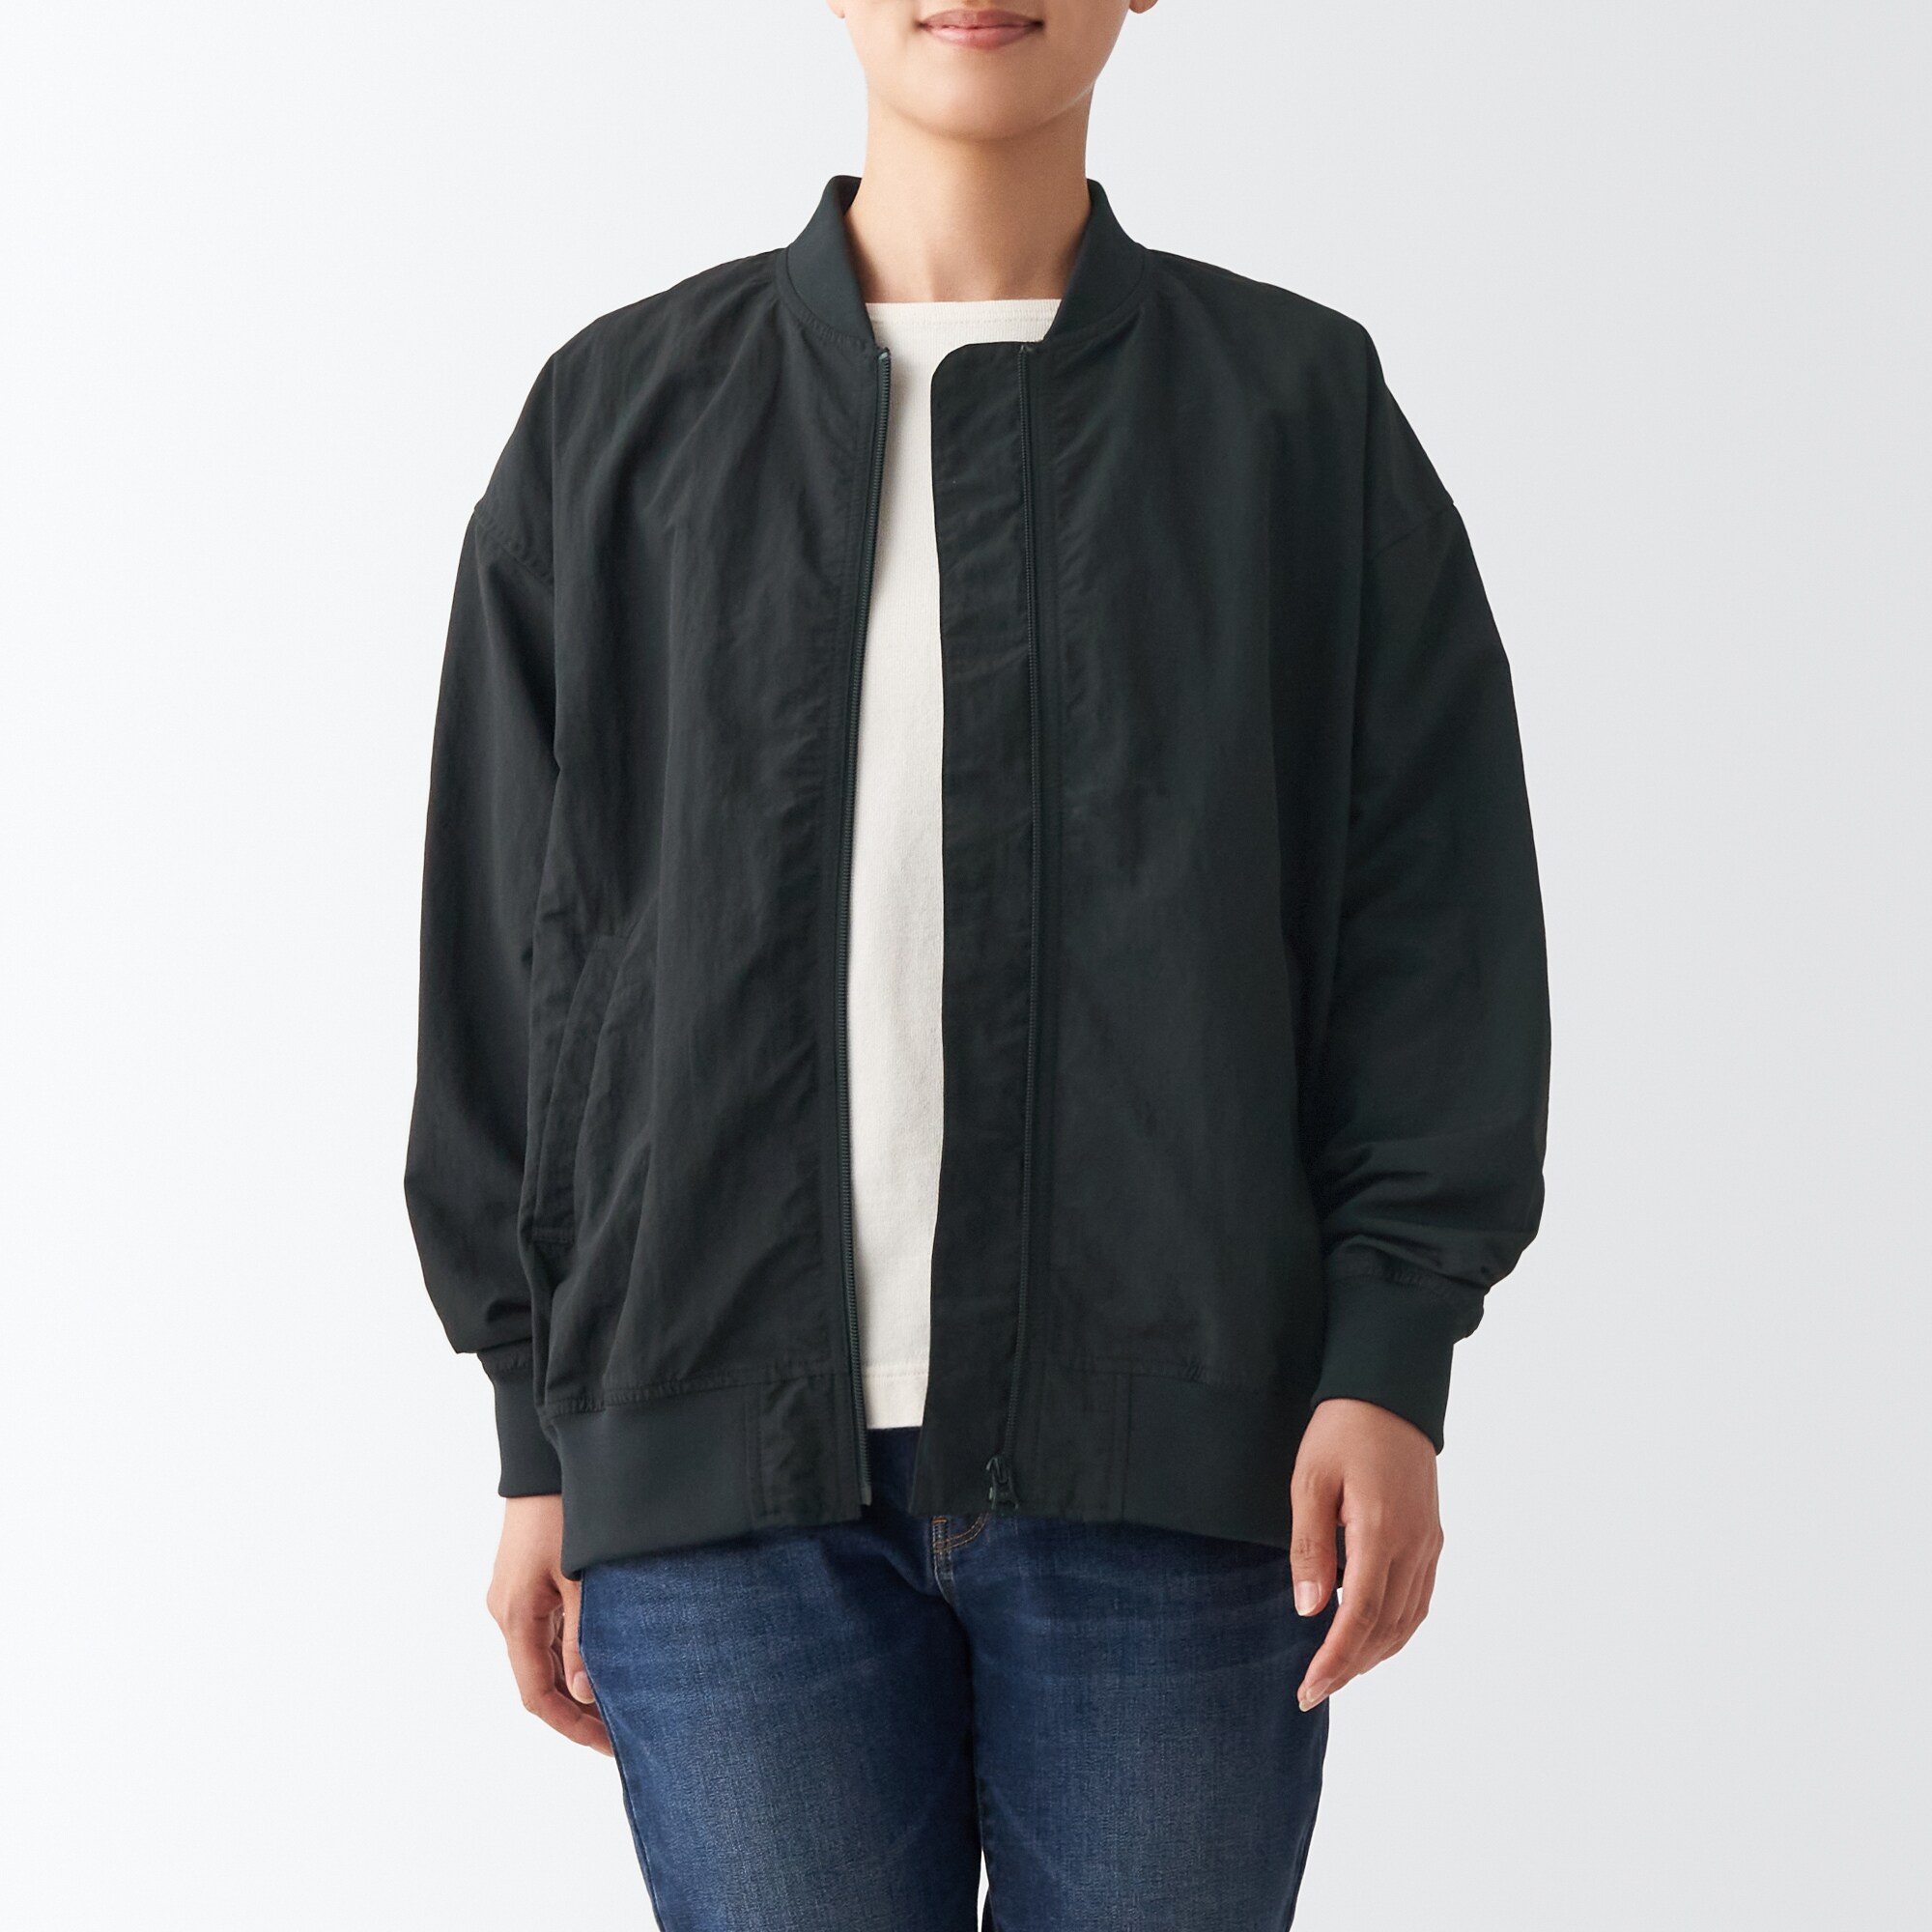 무인양품 일본 나일론 발수 여성 항공점퍼 재킷